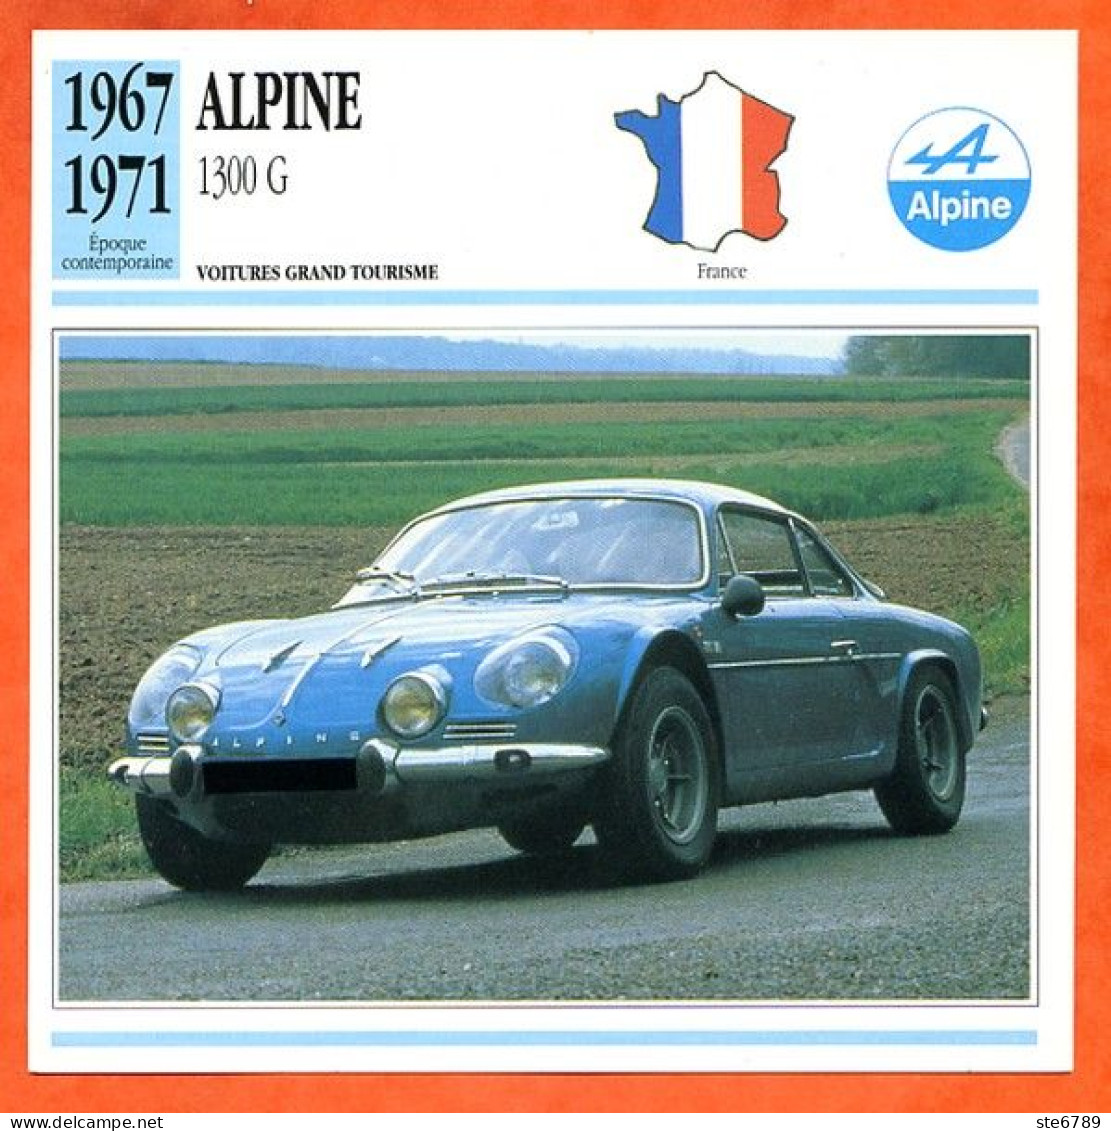 ALPINE 1300 G 1967  Voiture Grand Tourisme France Fiche Technique Automobile - Cars